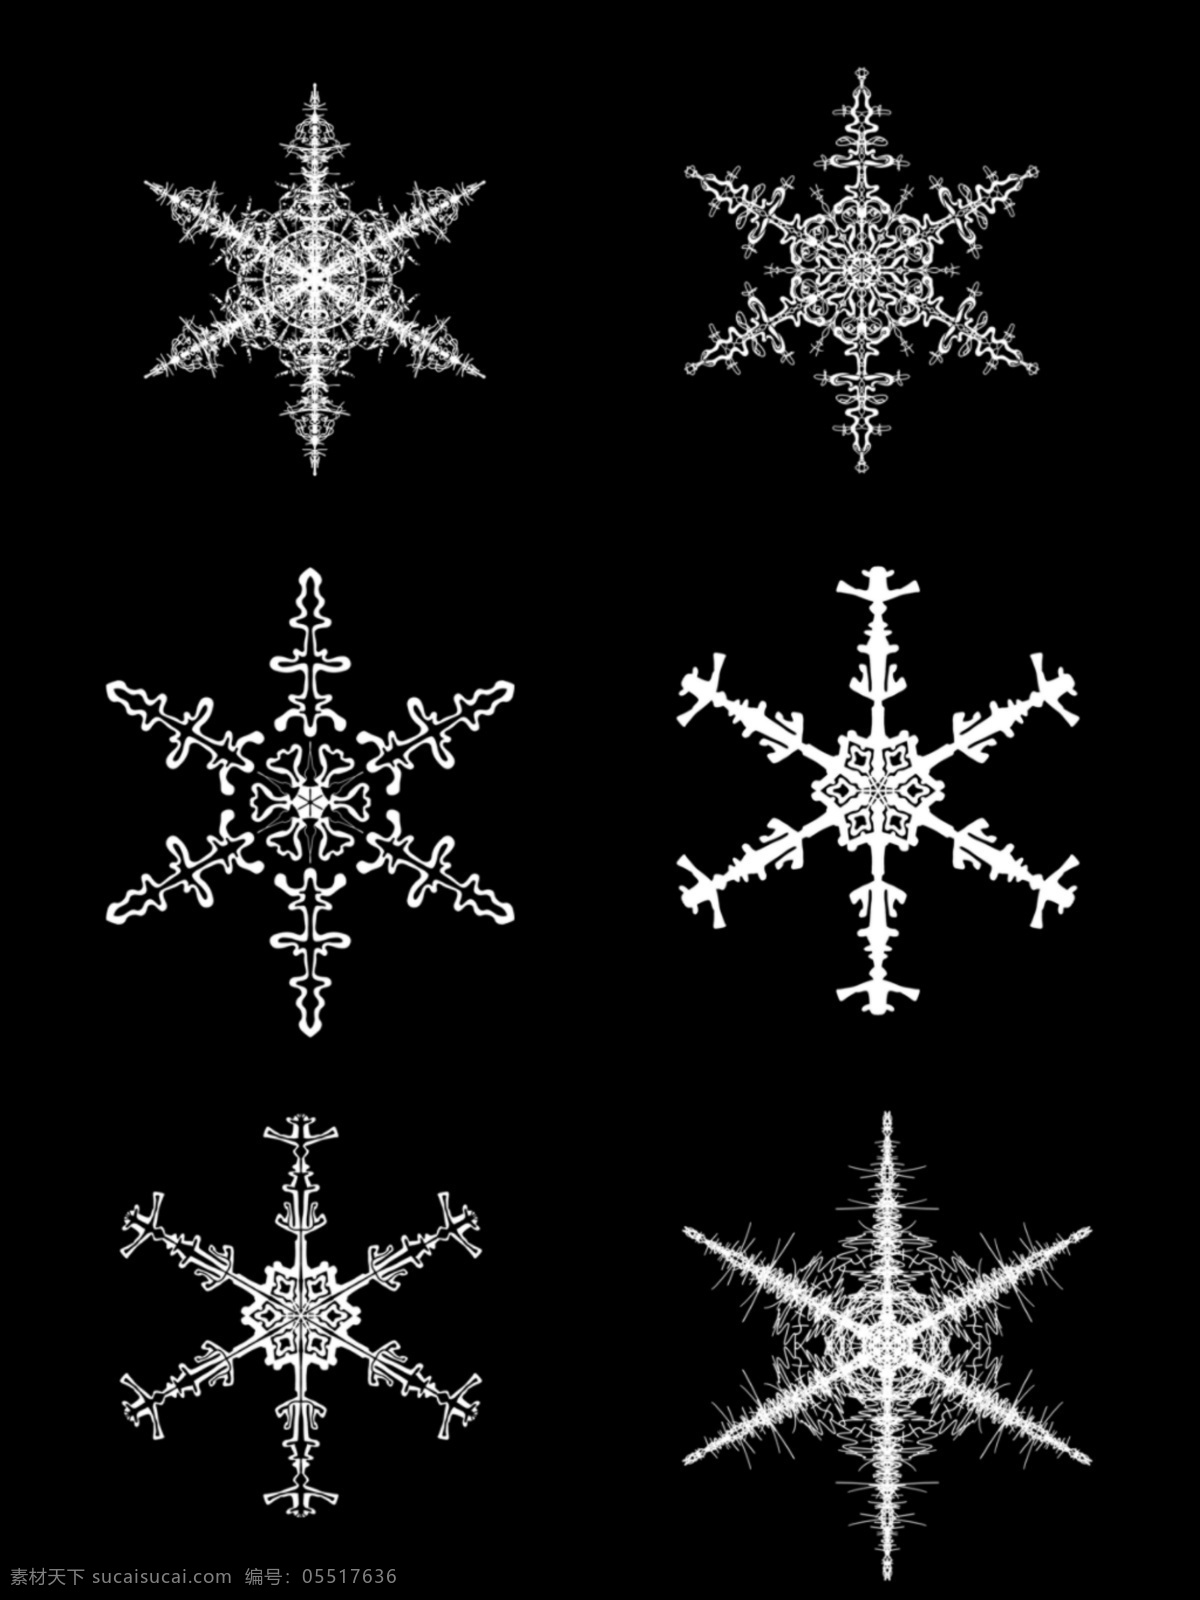 仿真 冰晶 冬季 雪花 图 装饰 元素 仿真冰晶 图装饰元素